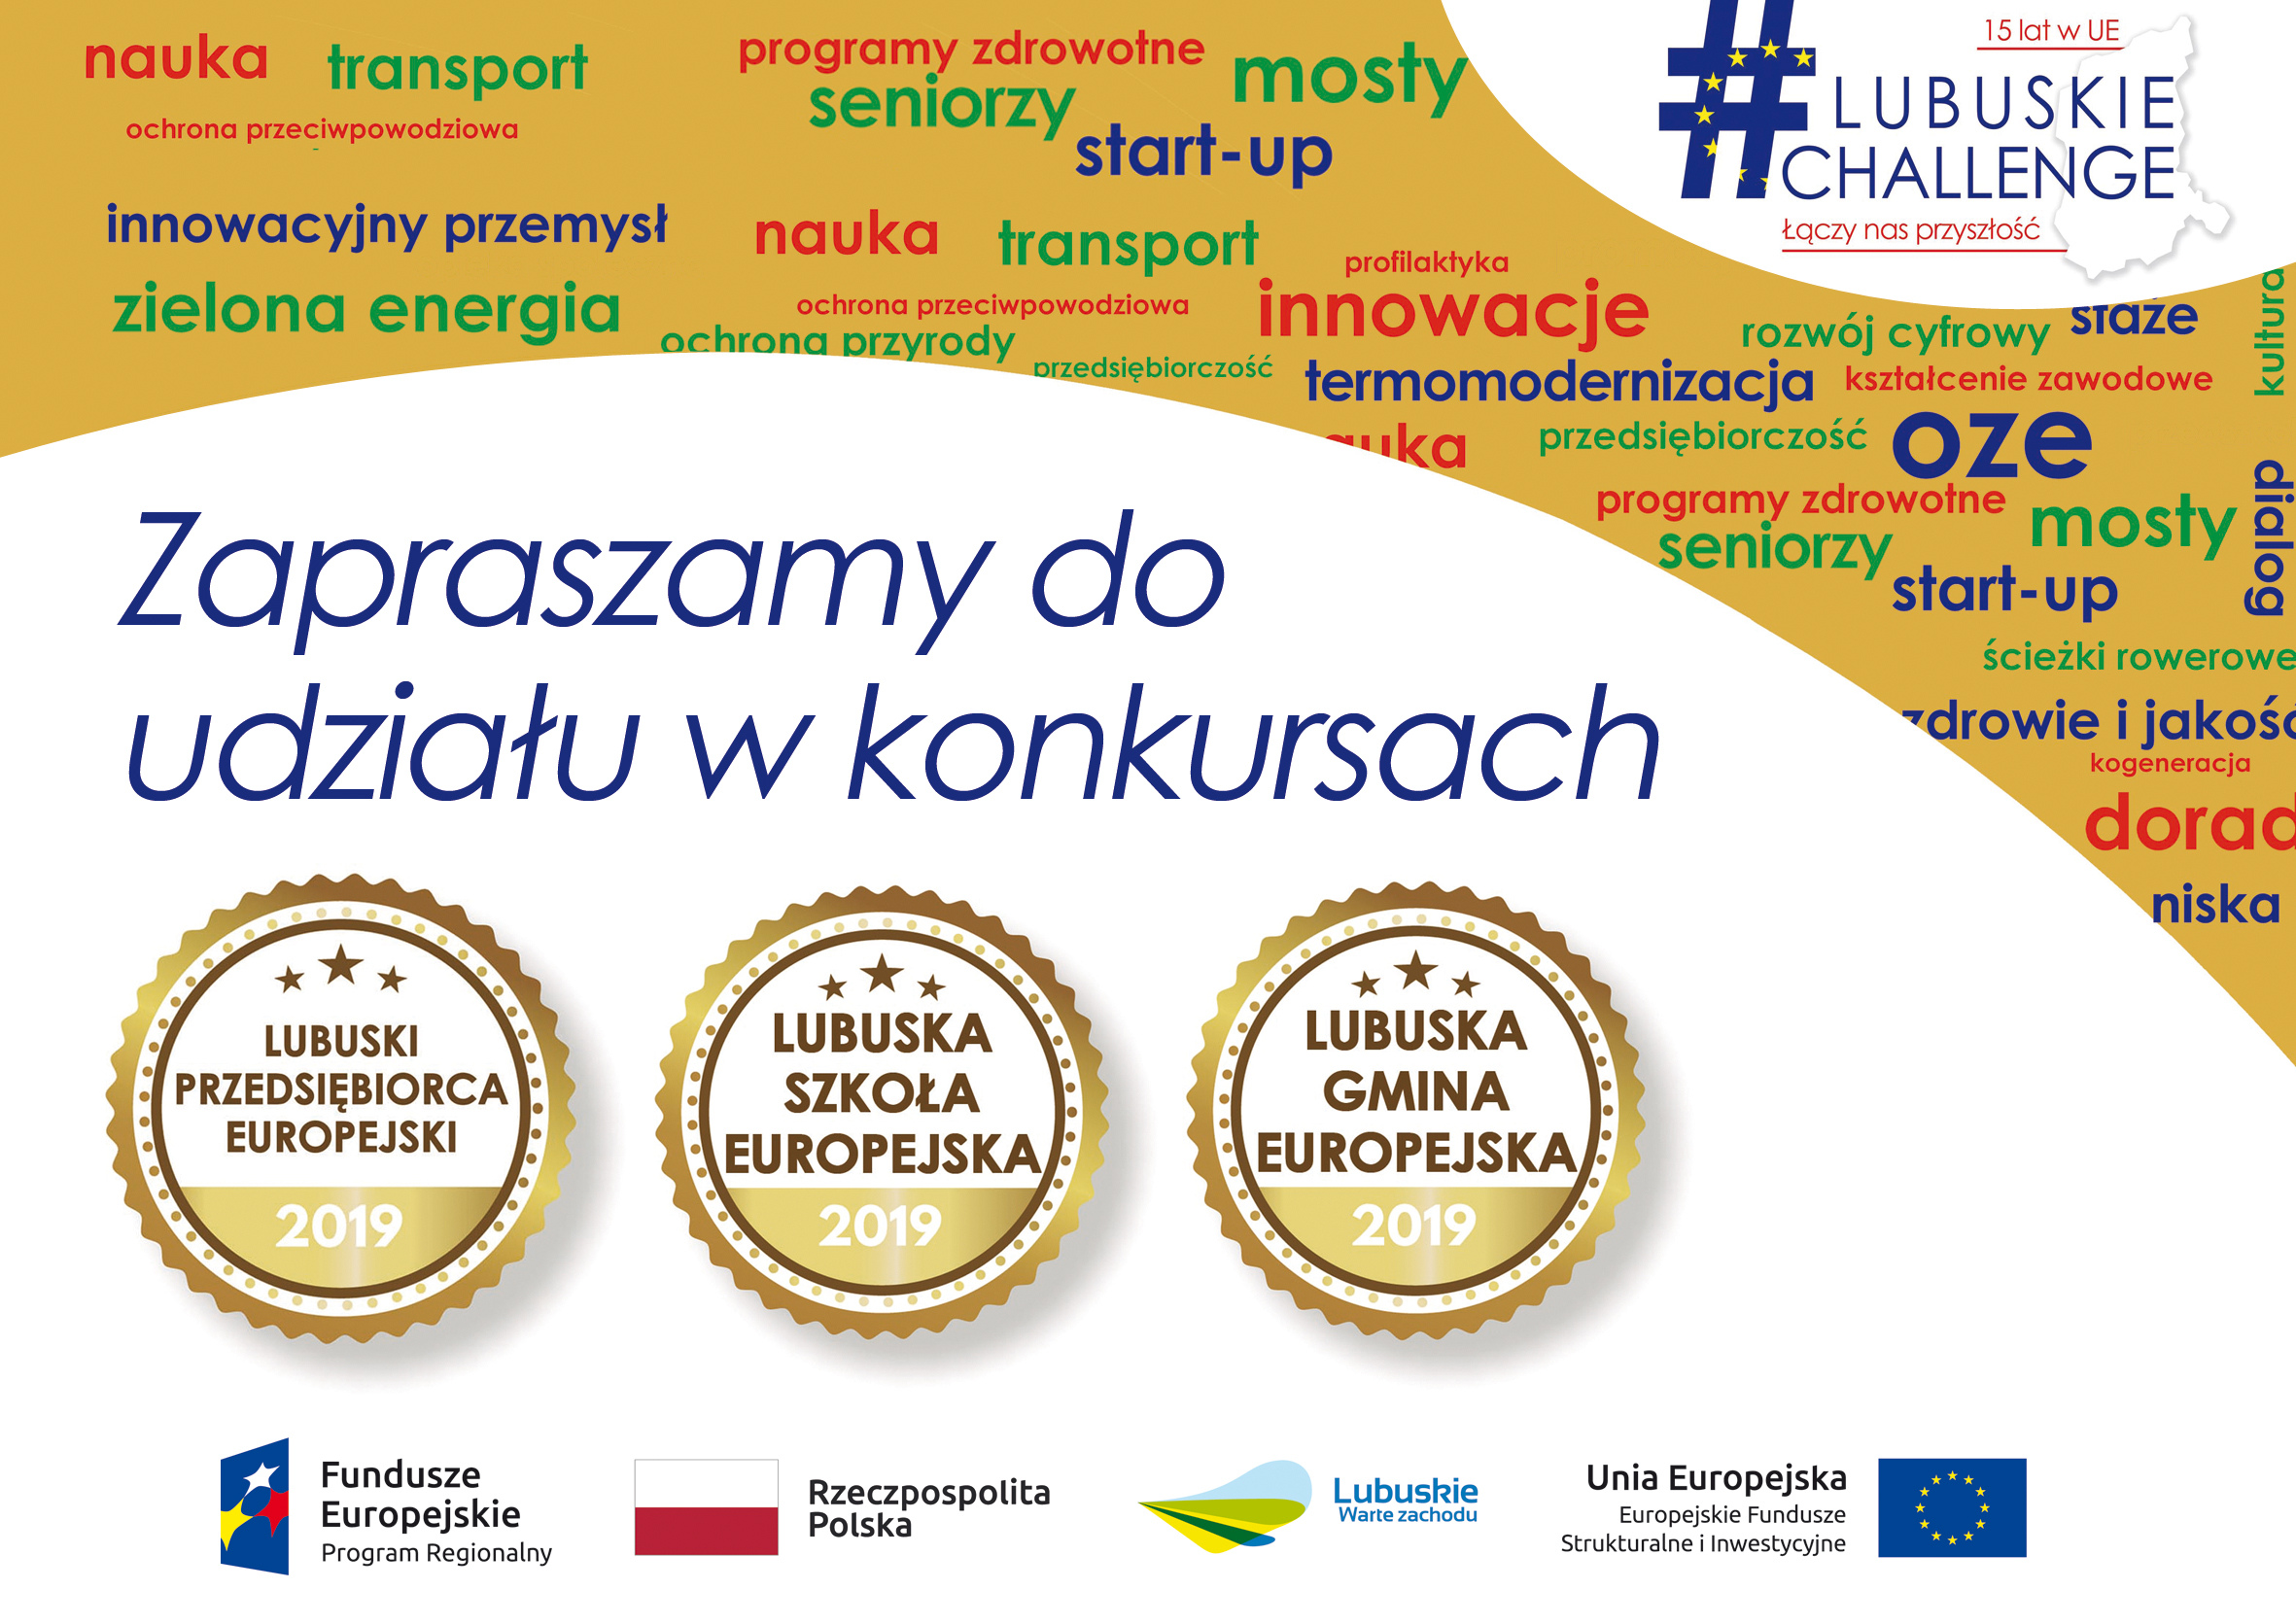 Plakat o konkursach promujących najlepszych w województwie lubuskim